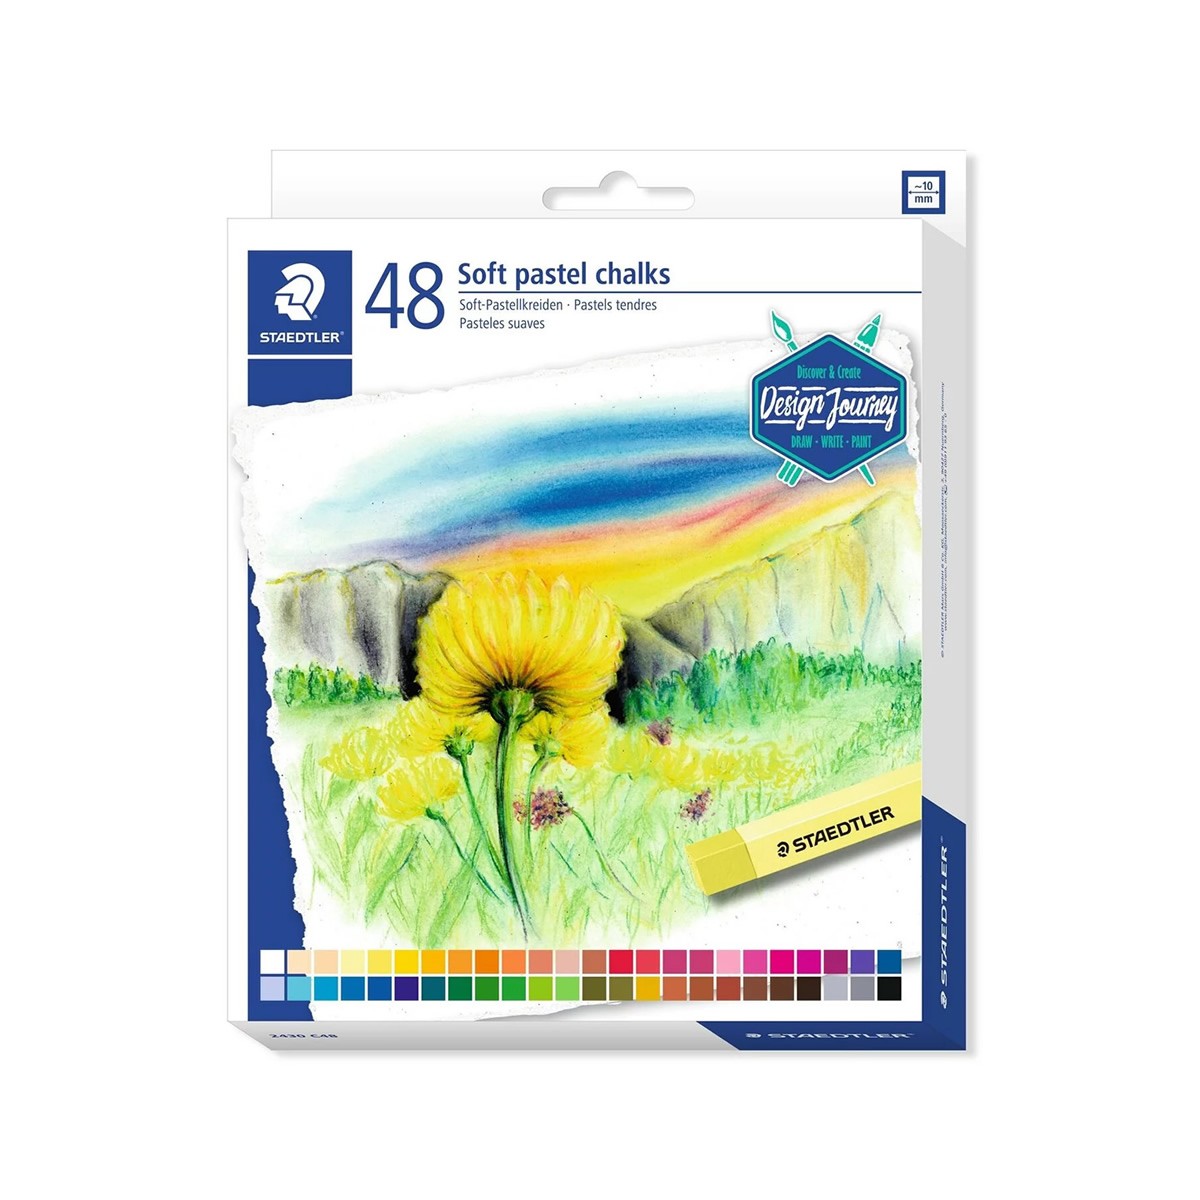 STAEDTLER 48 Soft Pastel Chalks - Σετ 48 Ξηροπαστέλ